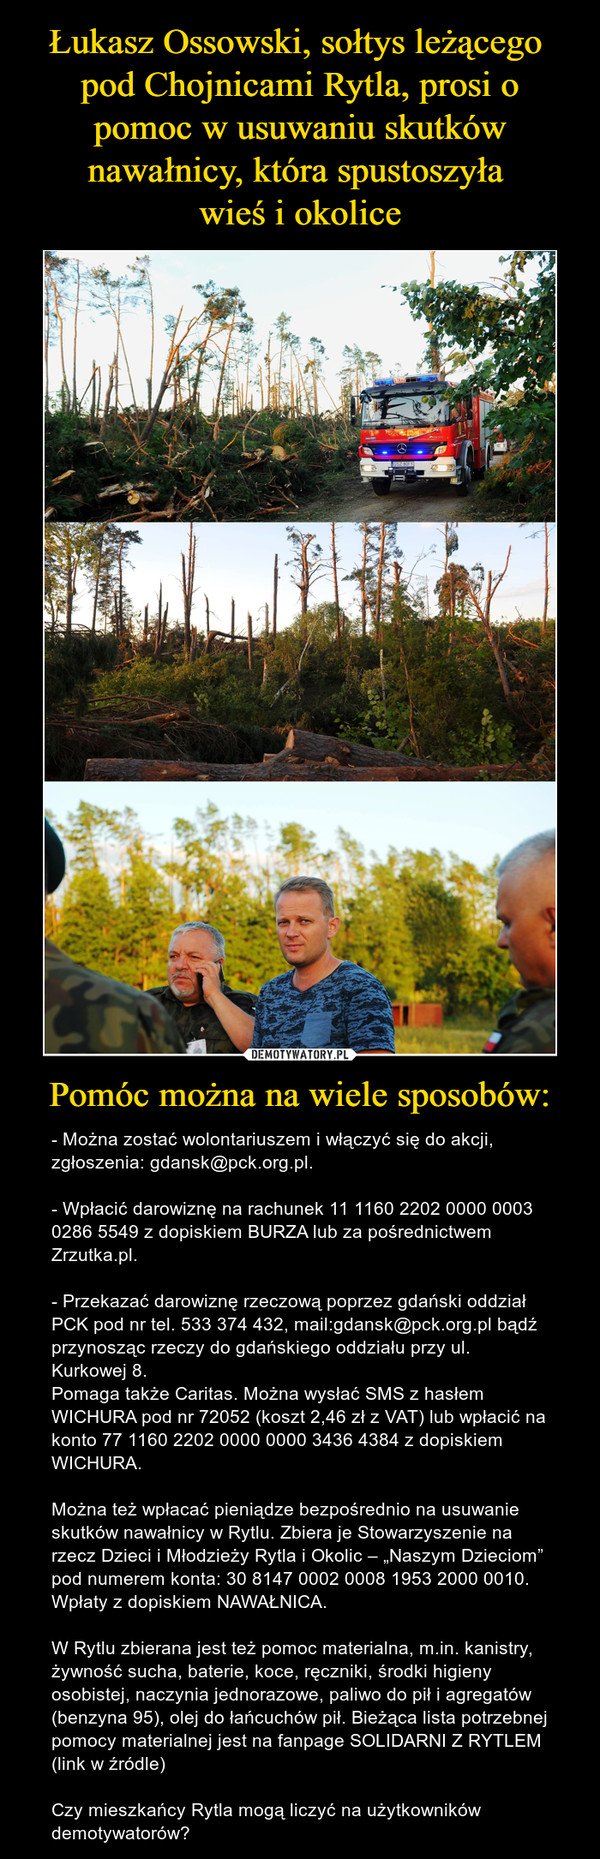 Pomóc można na wiele sposobów: – - Można zostać wolontariuszem i włączyć się do akcji, zgłoszenia: gdansk@pck.org.pl.- Wpłacić darowiznę na rachunek 11 1160 2202 0000 0003 0286 5549 z dopiskiem BURZA lub za pośrednictwem Zrzutka.pl.- Przekazać darowiznę rzeczową poprzez gdański oddział PCK pod nr tel. 533 374 432, mail:gdansk@pck.org.pl bądź przynosząc rzeczy do gdańskiego oddziału przy ul. Kurkowej 8.Pomaga także Caritas. Można wysłać SMS z hasłem WICHURA pod nr 72052 (koszt 2,46 zł z VAT) lub wpłacić na konto 77 1160 2202 0000 0000 3436 4384 z dopiskiem WICHURA.Można też wpłacać pieniądze bezpośrednio na usuwanie skutków nawałnicy w Rytlu. Zbiera je Stowarzyszenie na rzecz Dzieci i Młodzieży Rytla i Okolic – „Naszym Dzieciom” pod numerem konta: 30 8147 0002 0008 1953 2000 0010. Wpłaty z dopiskiem NAWAŁNICA.W Rytlu zbierana jest też pomoc materialna, m.in. kanistry, żywność sucha, baterie, koce, ręczniki, środki higieny osobistej, naczynia jednorazowe, paliwo do pił i agregatów (benzyna 95), olej do łańcuchów pił. Bieżąca lista potrzebnej pomocy materialnej jest na fanpage SOLIDARNI Z RYTLEM (link w źródle)Czy mieszkańcy Rytla mogą liczyć na użytkowników demotywatorów? 